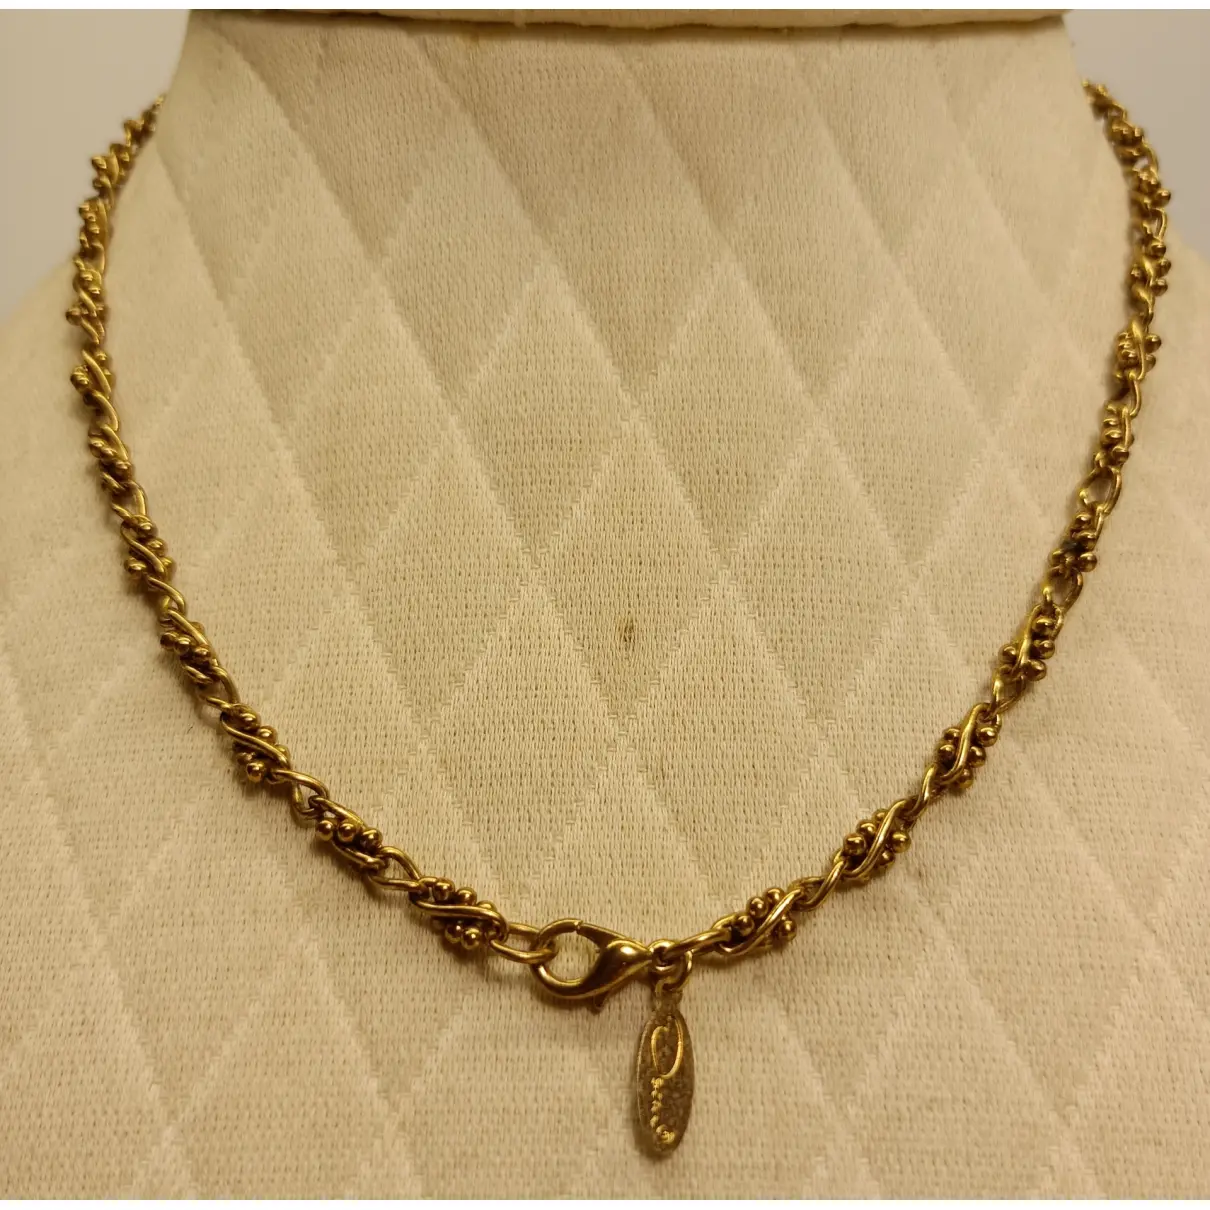 Necklace Oscar De La Renta - Vintage